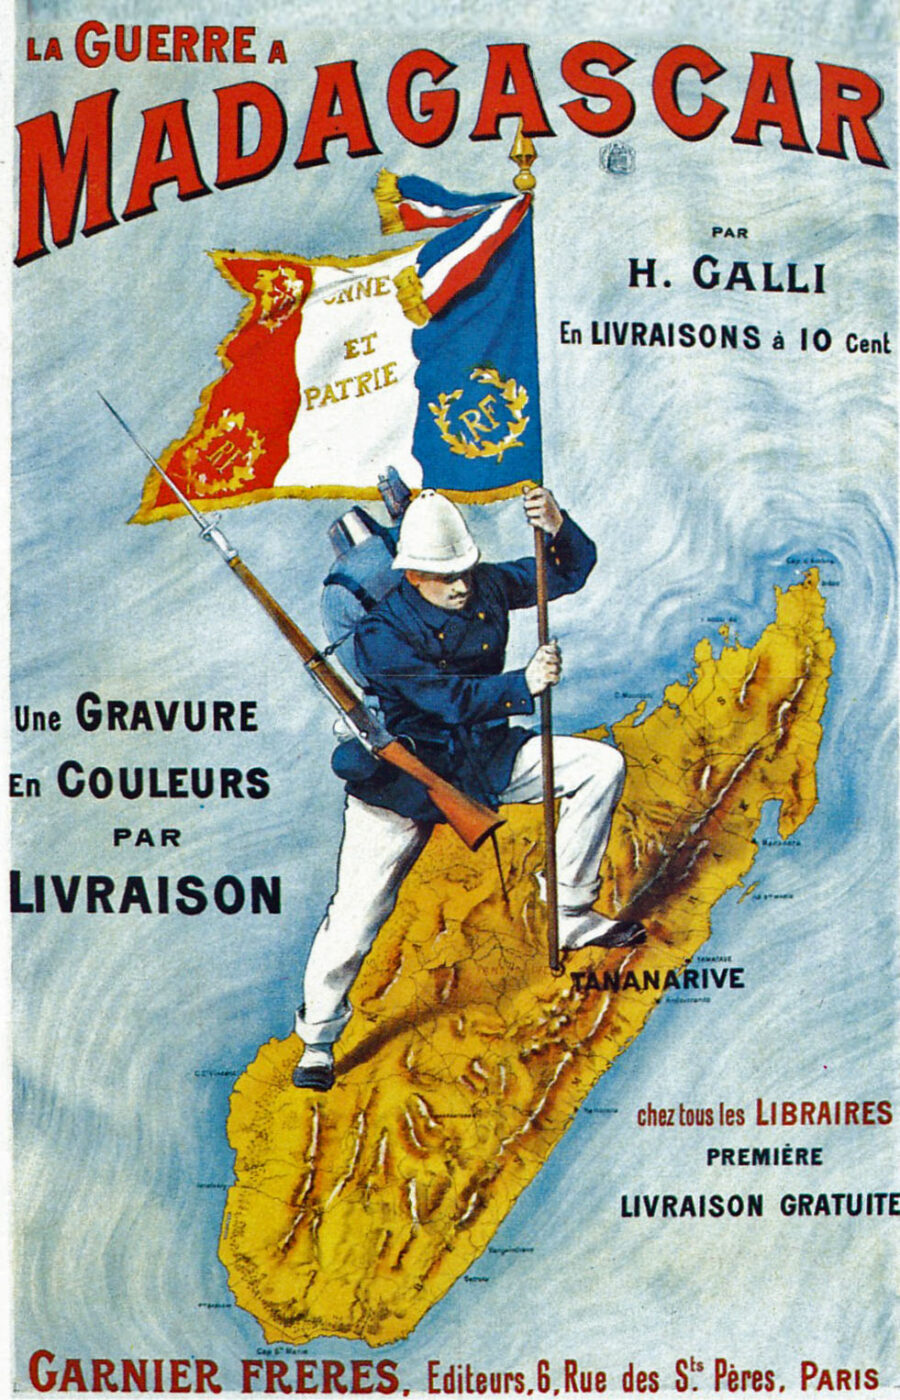 Heroisch: Werbeplakat für Kolportagegeschichten über die Eroberung Madagaskars durch französische Truppen, 1896 Foto: Archiv des Autors 